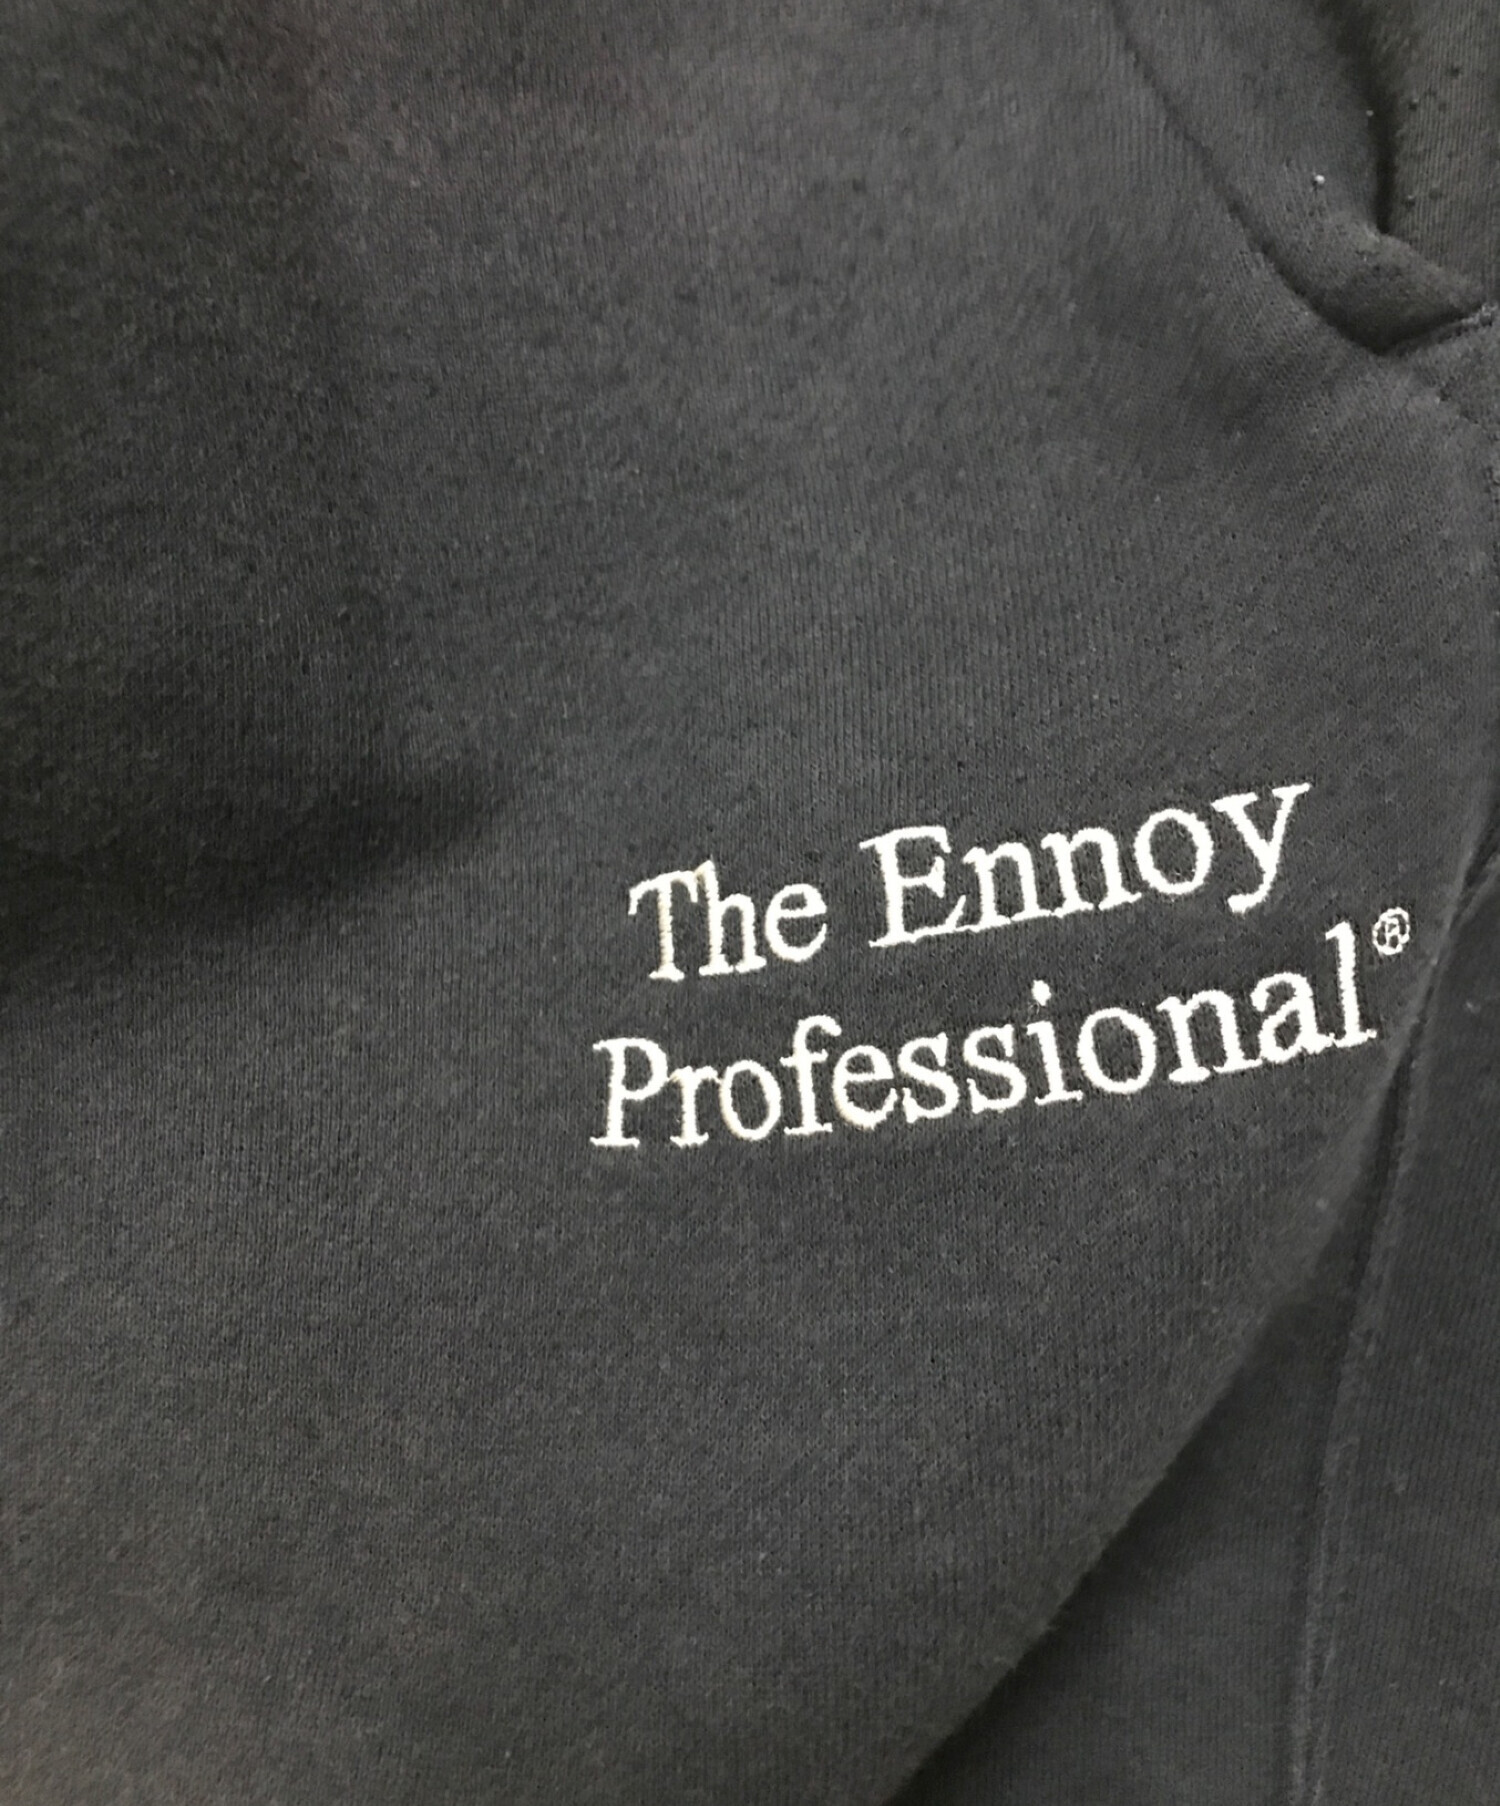 中古・古着通販】The Ennoy Professional (ザ エンノイ